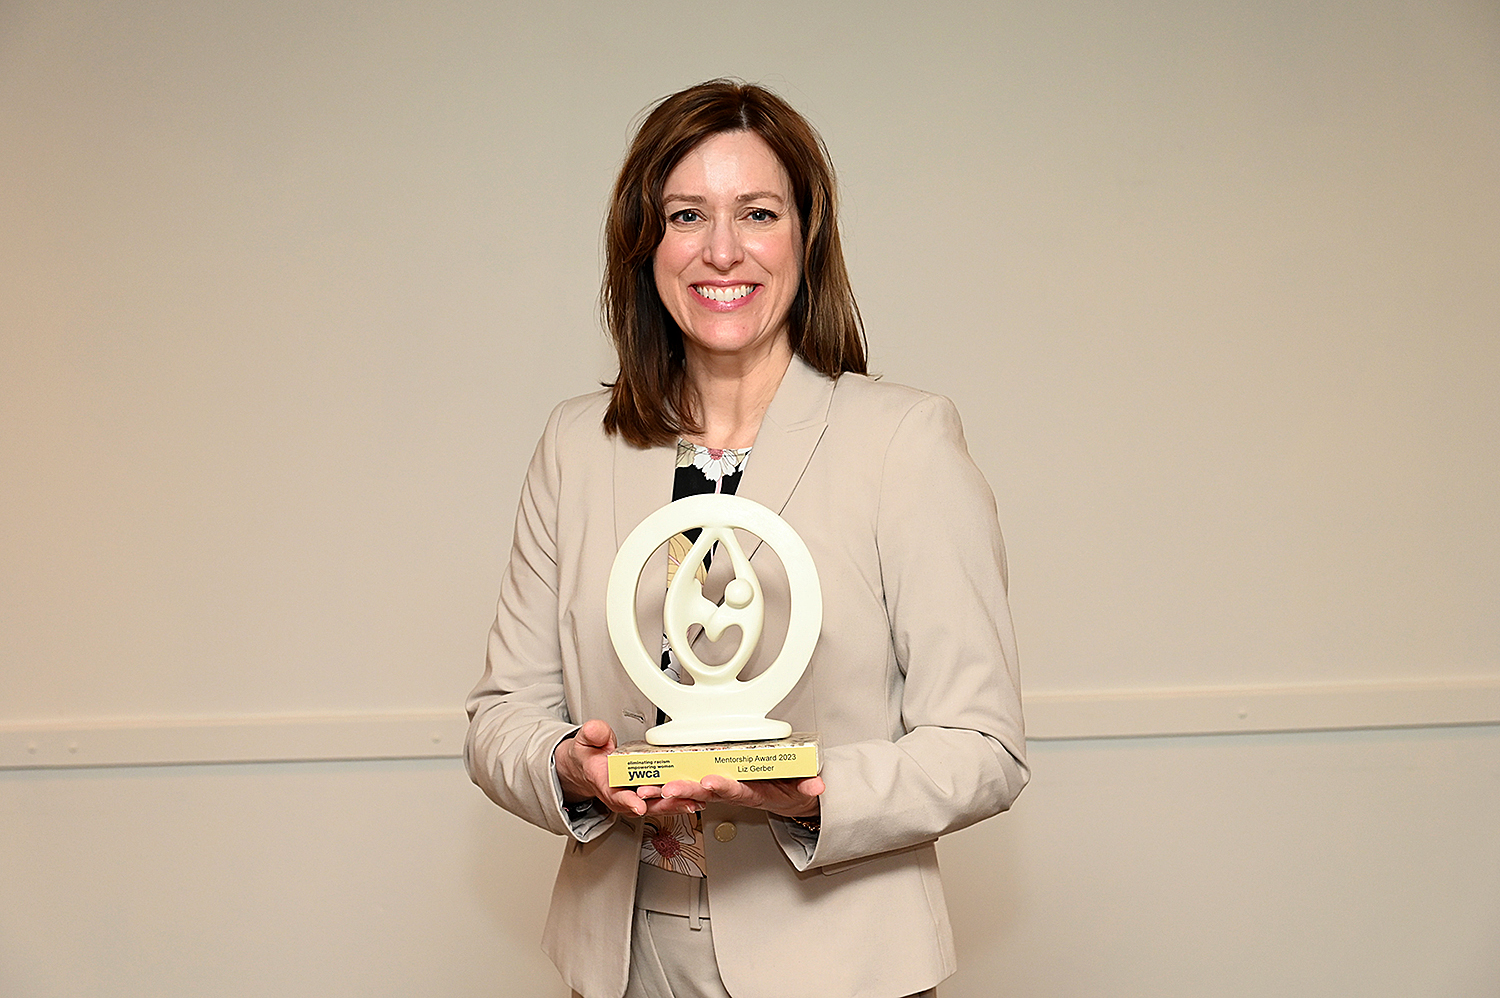 Liz Gerber holding the Mentorship Award